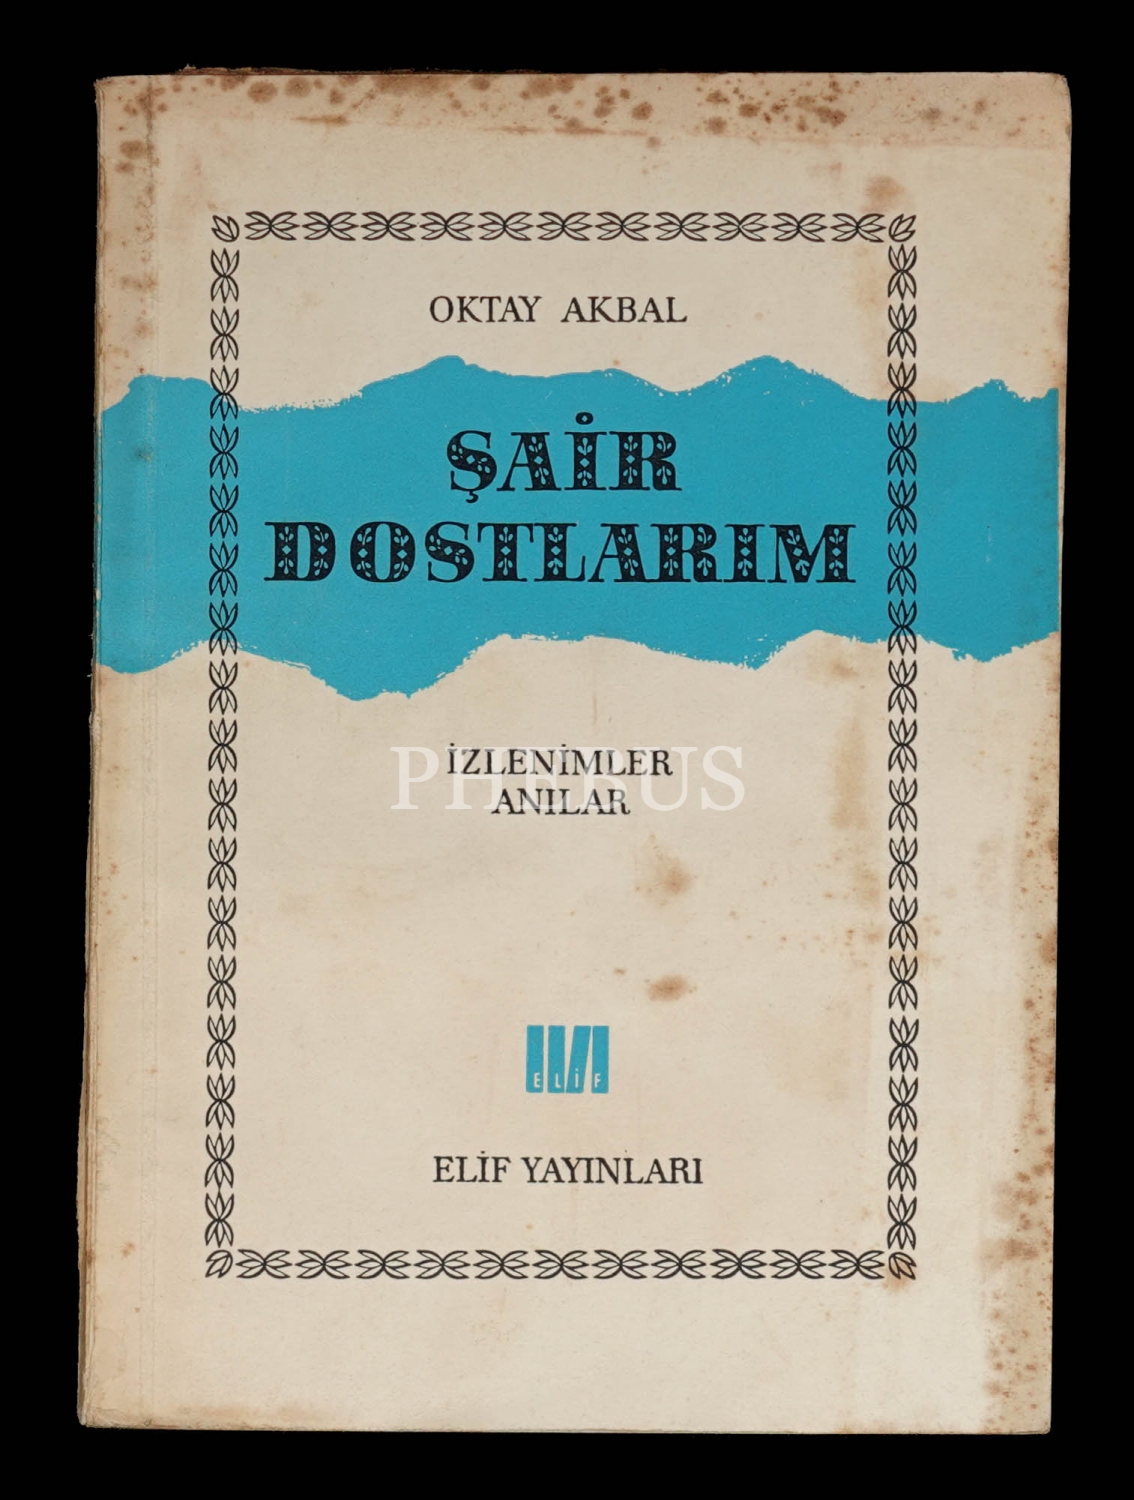 ŞAİR DOSTLARIM, Oktay Akbal, 1964, Elif Yayınları, 100 sayfa, 14x19 cm...